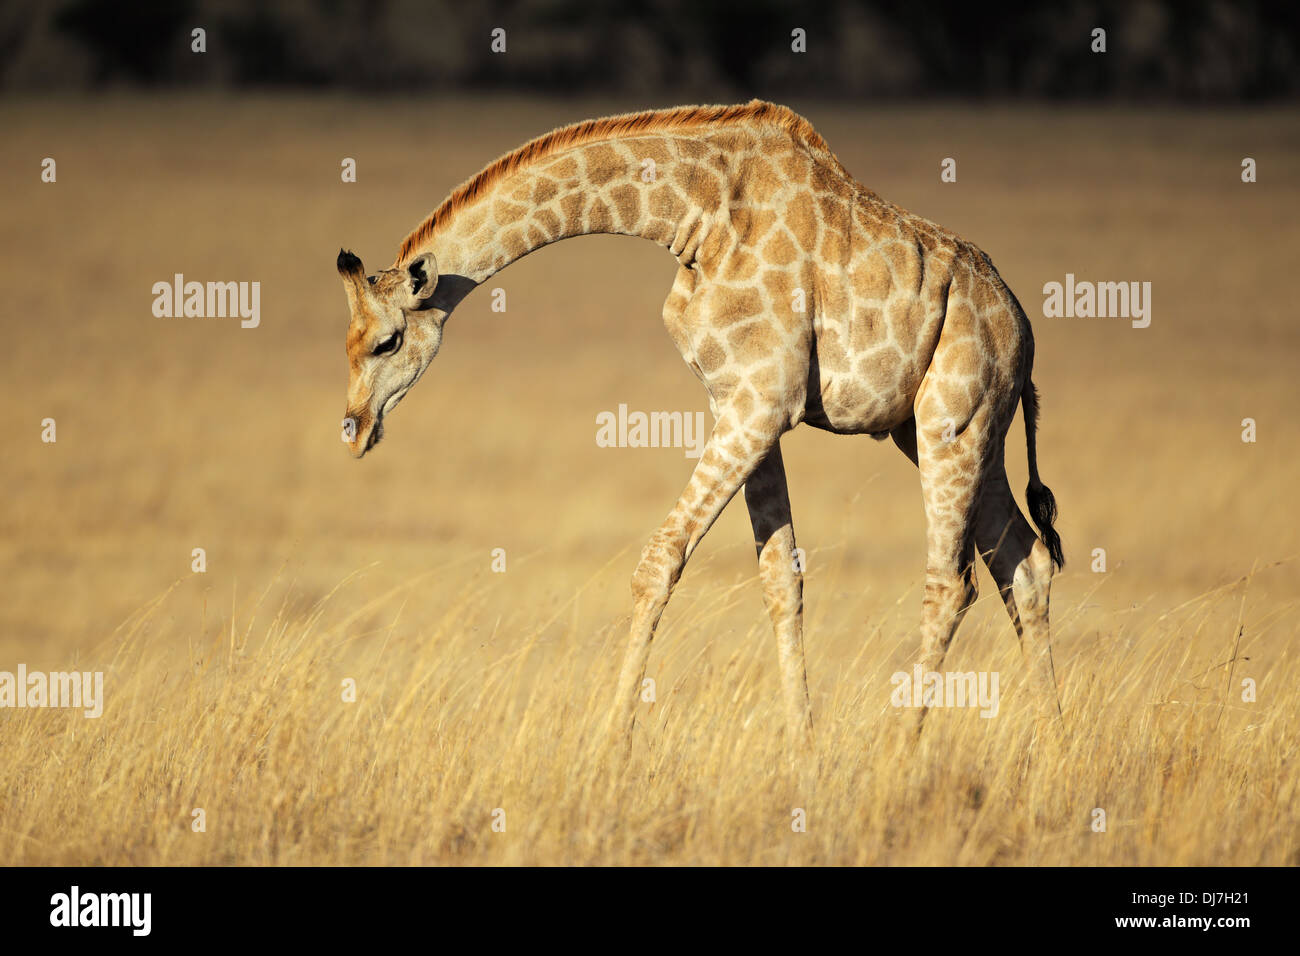 Girafe (Giraffa camelopardalis) dans les prairies ouvertes, Afrique du Sud Banque D'Images